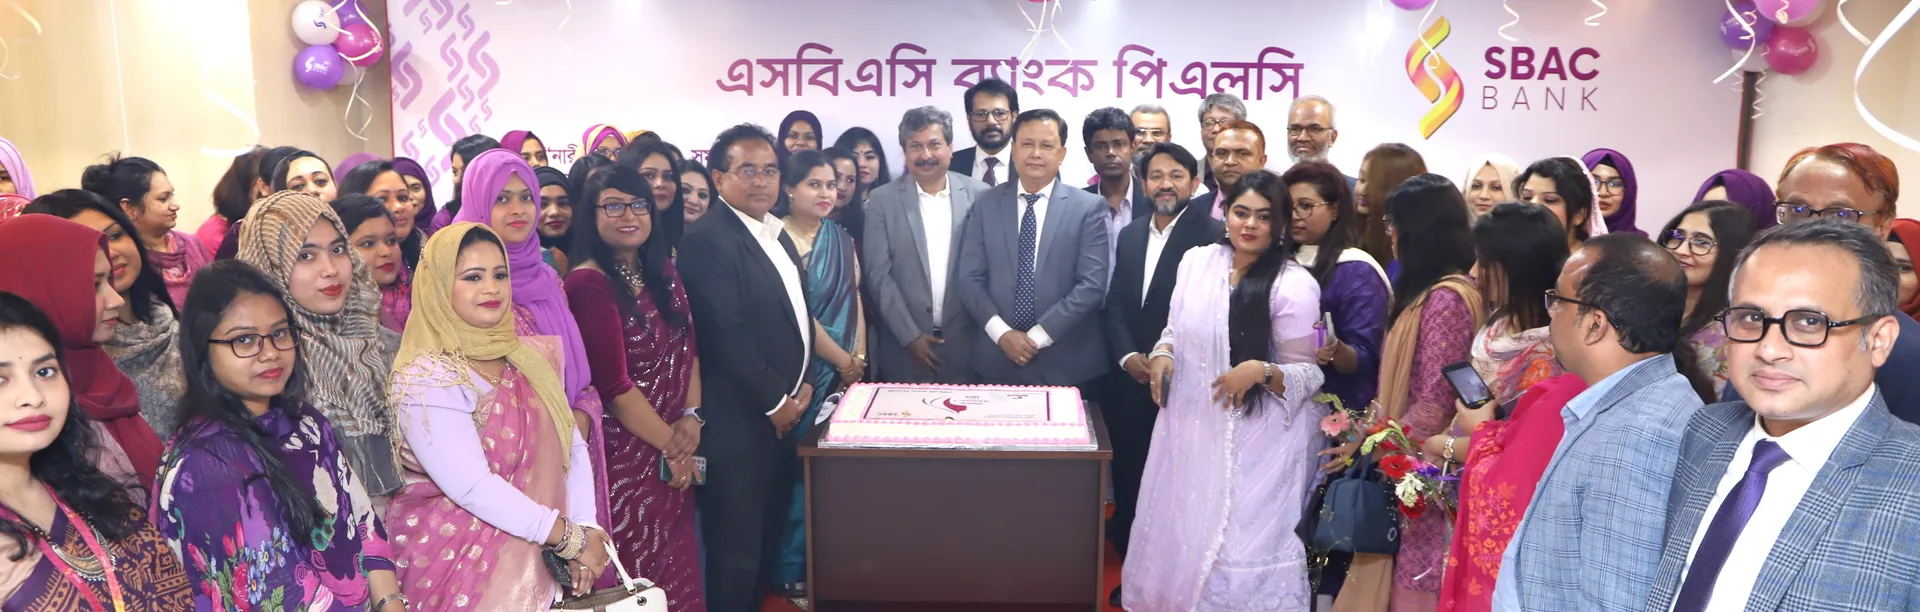 SBAC SBAC Bank celebrates Women’s Day 